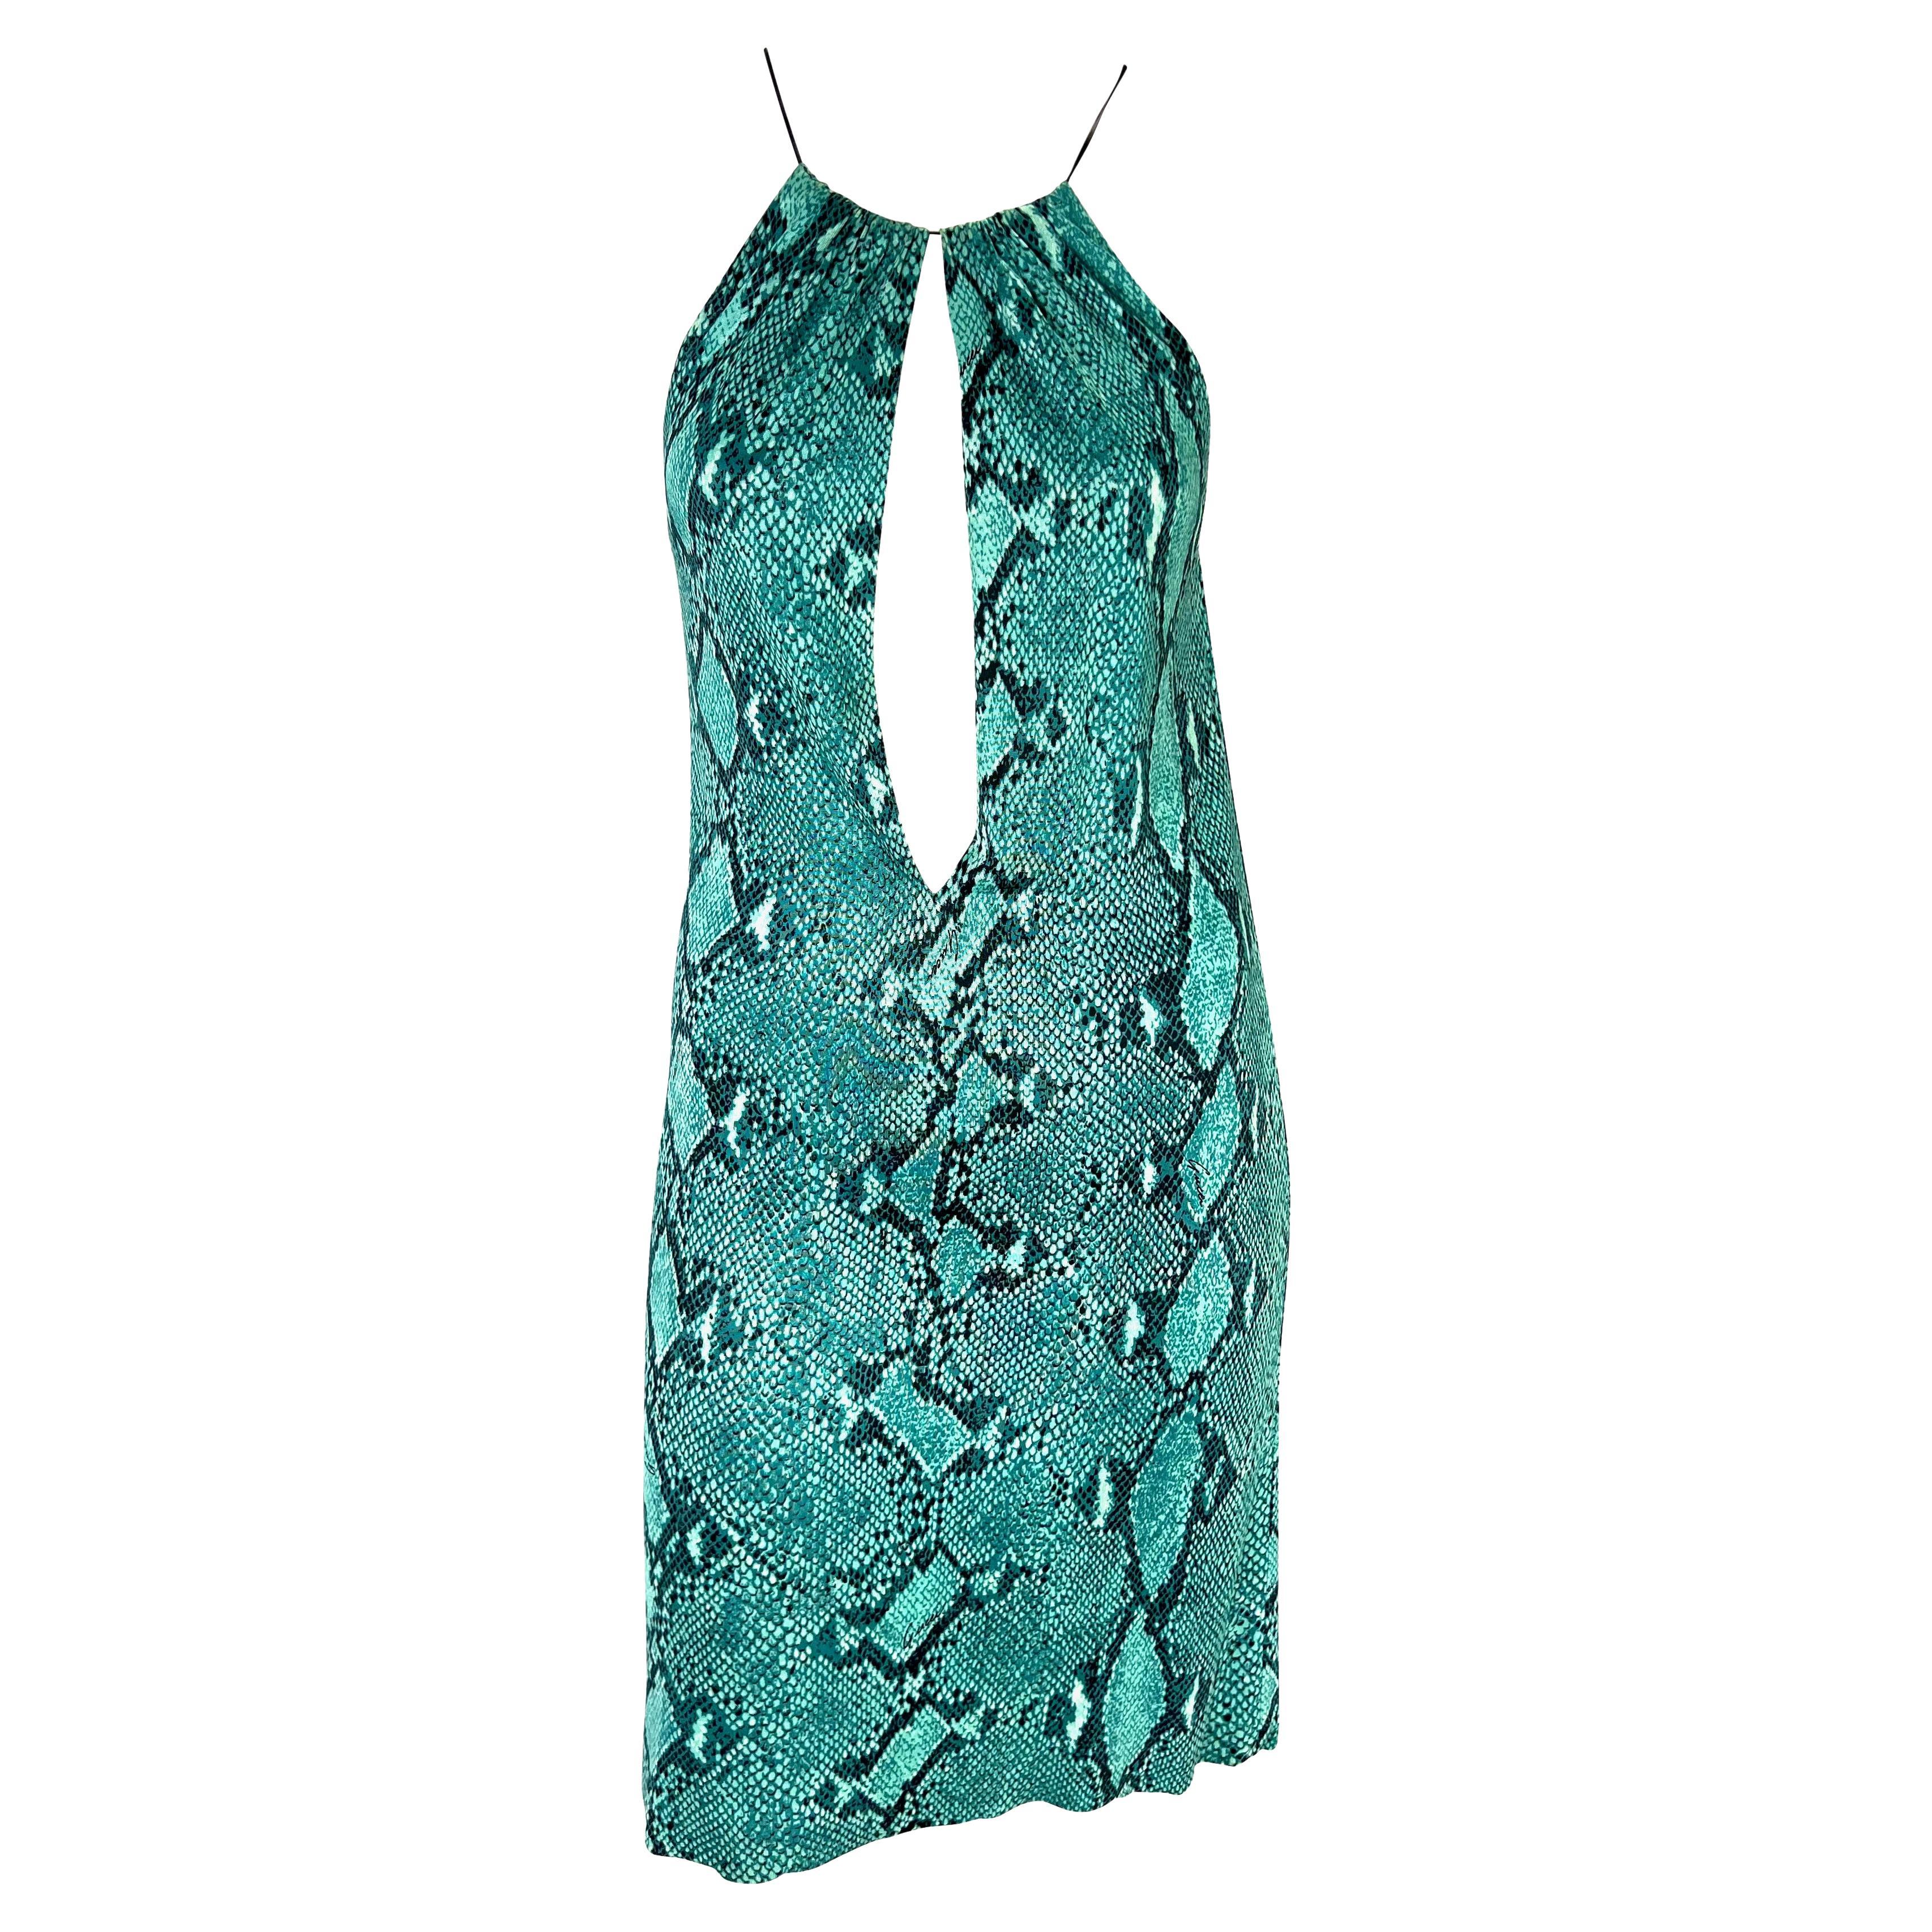 F/S 2000 Gucci by Tom Ford Blaues, tief ausgeschnittenes Kleid aus Viskose mit Schlangendruck und Lederriemen